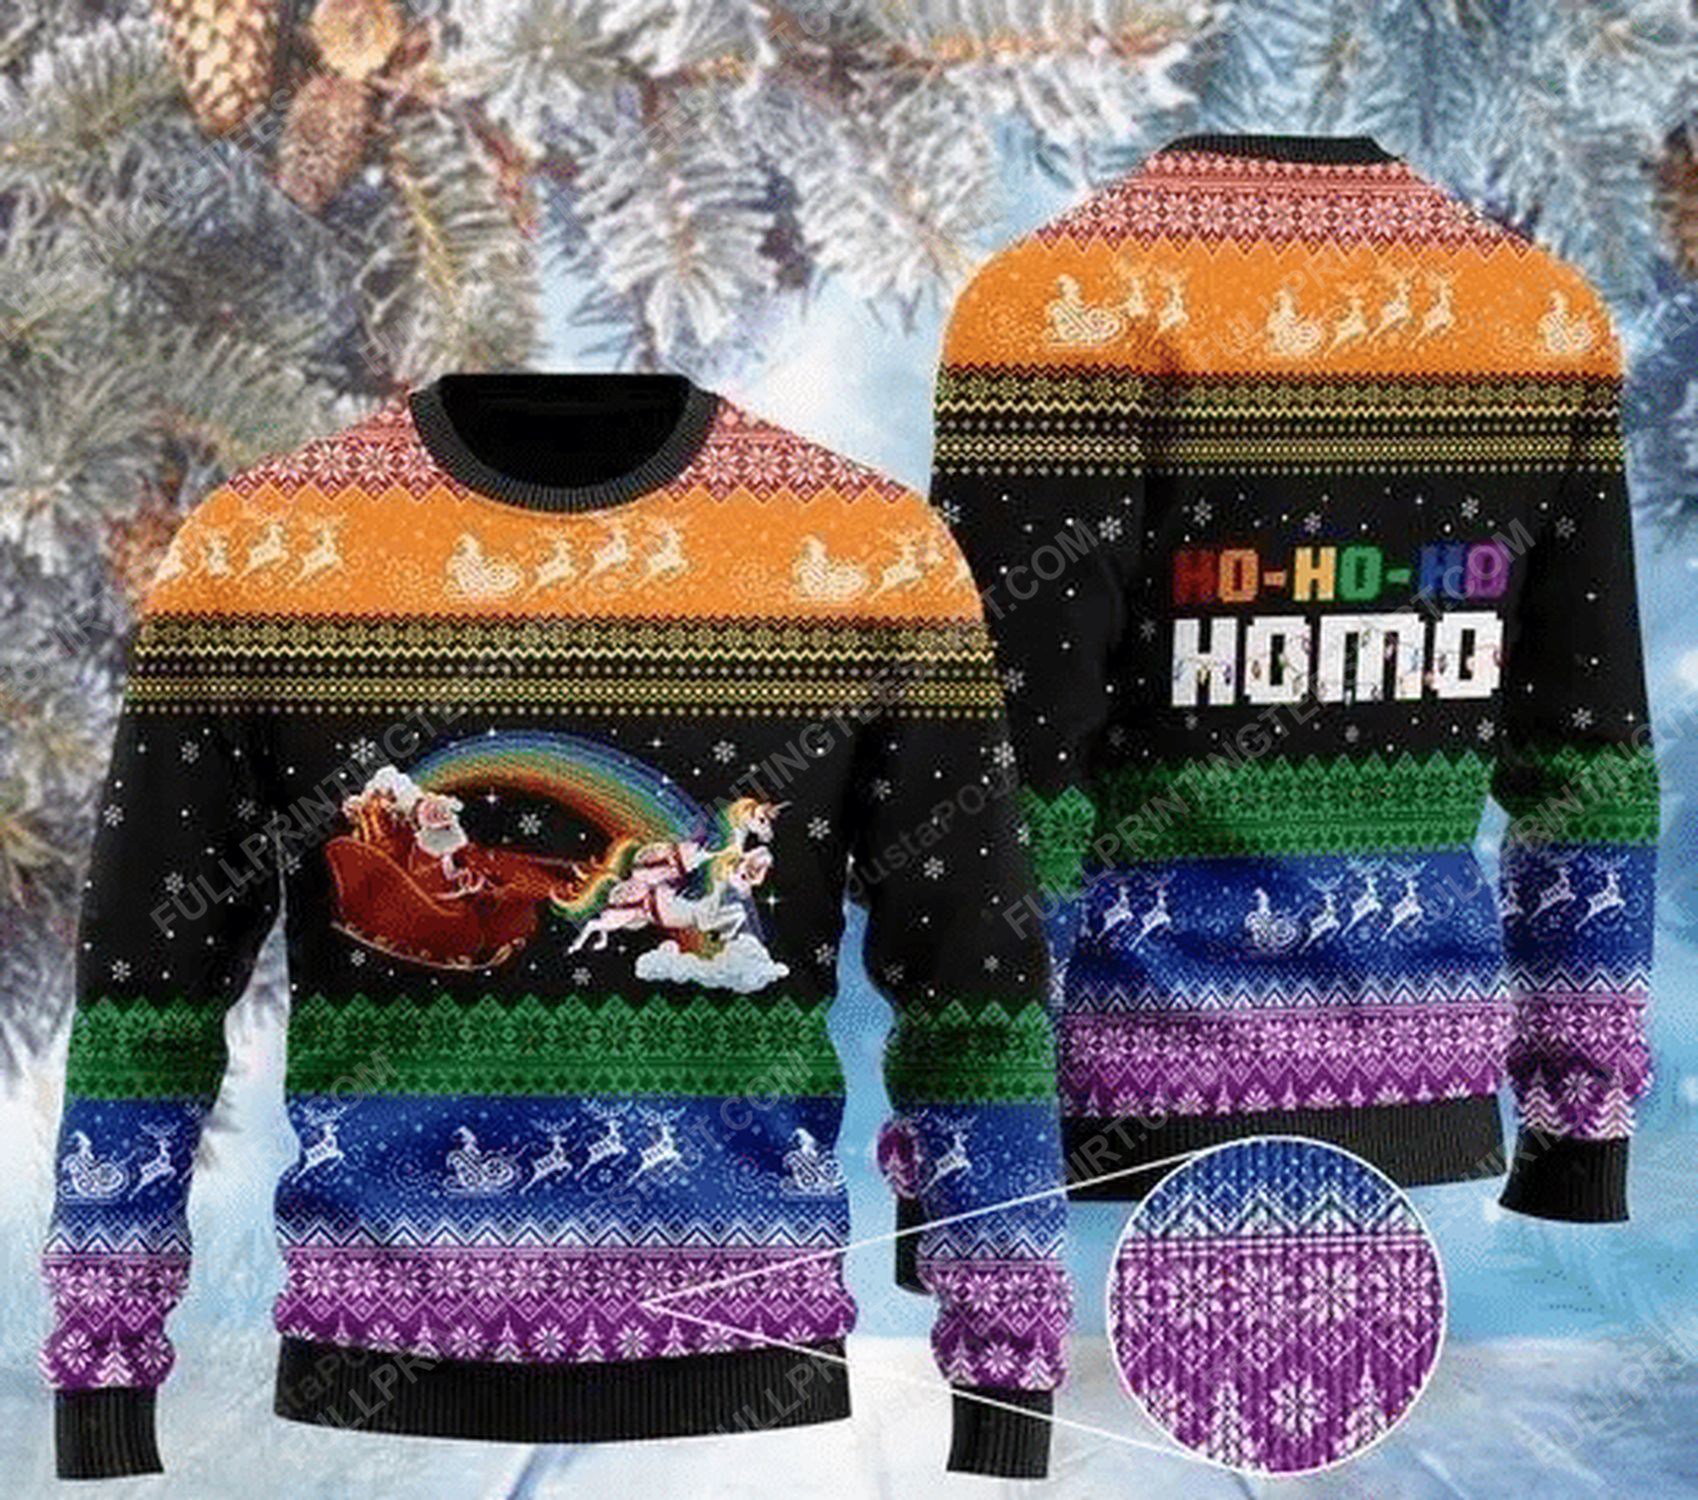 Ho-ho-ho homo gay santa and unicorn full print ugly christmas sweater